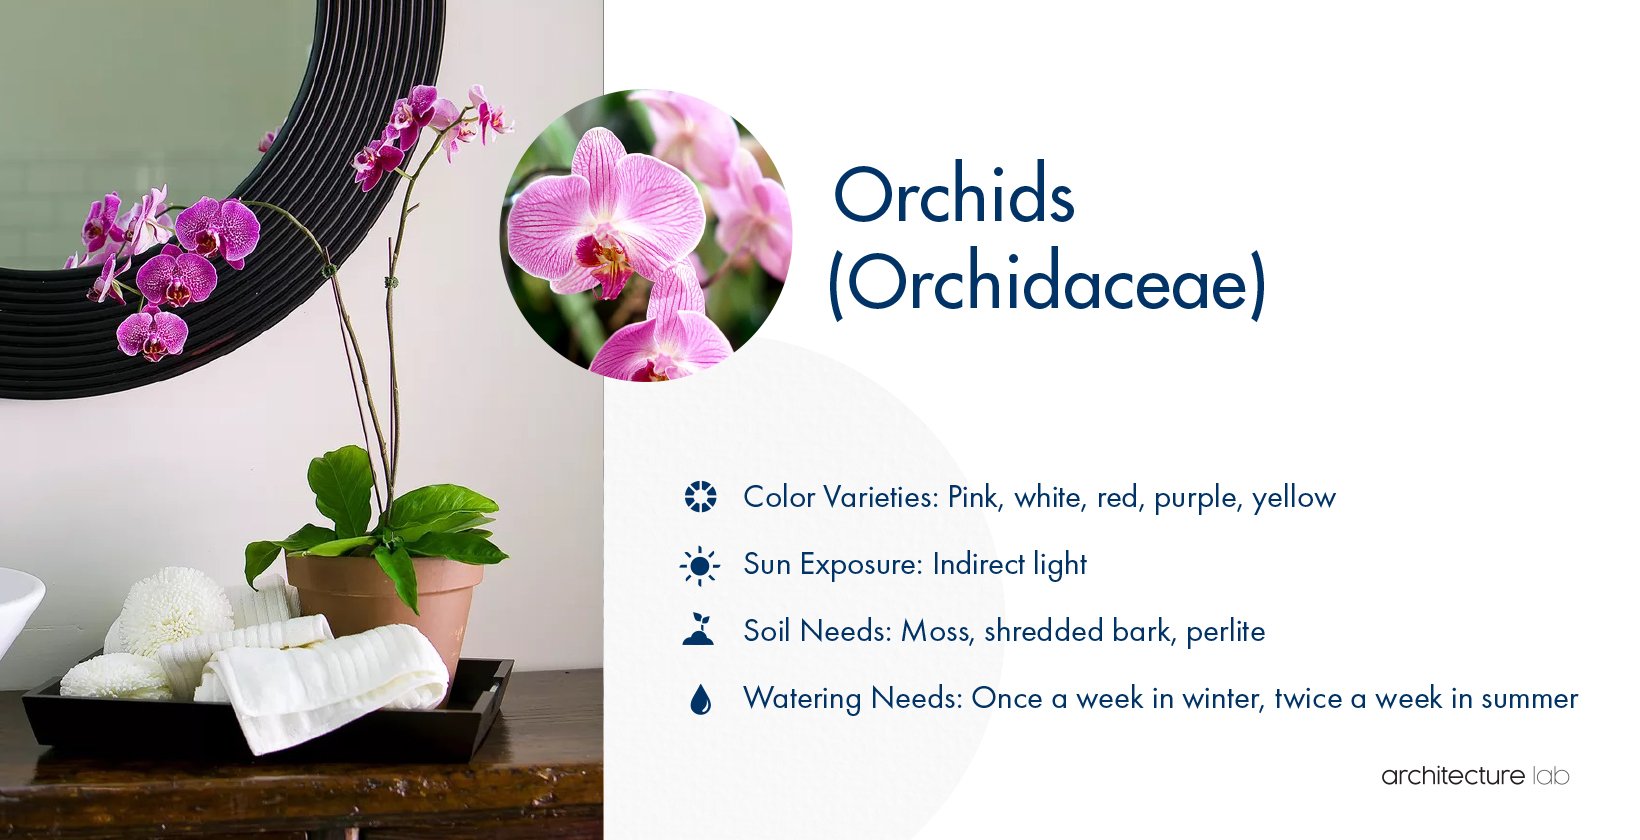 2. Orchids (orchidaceae)